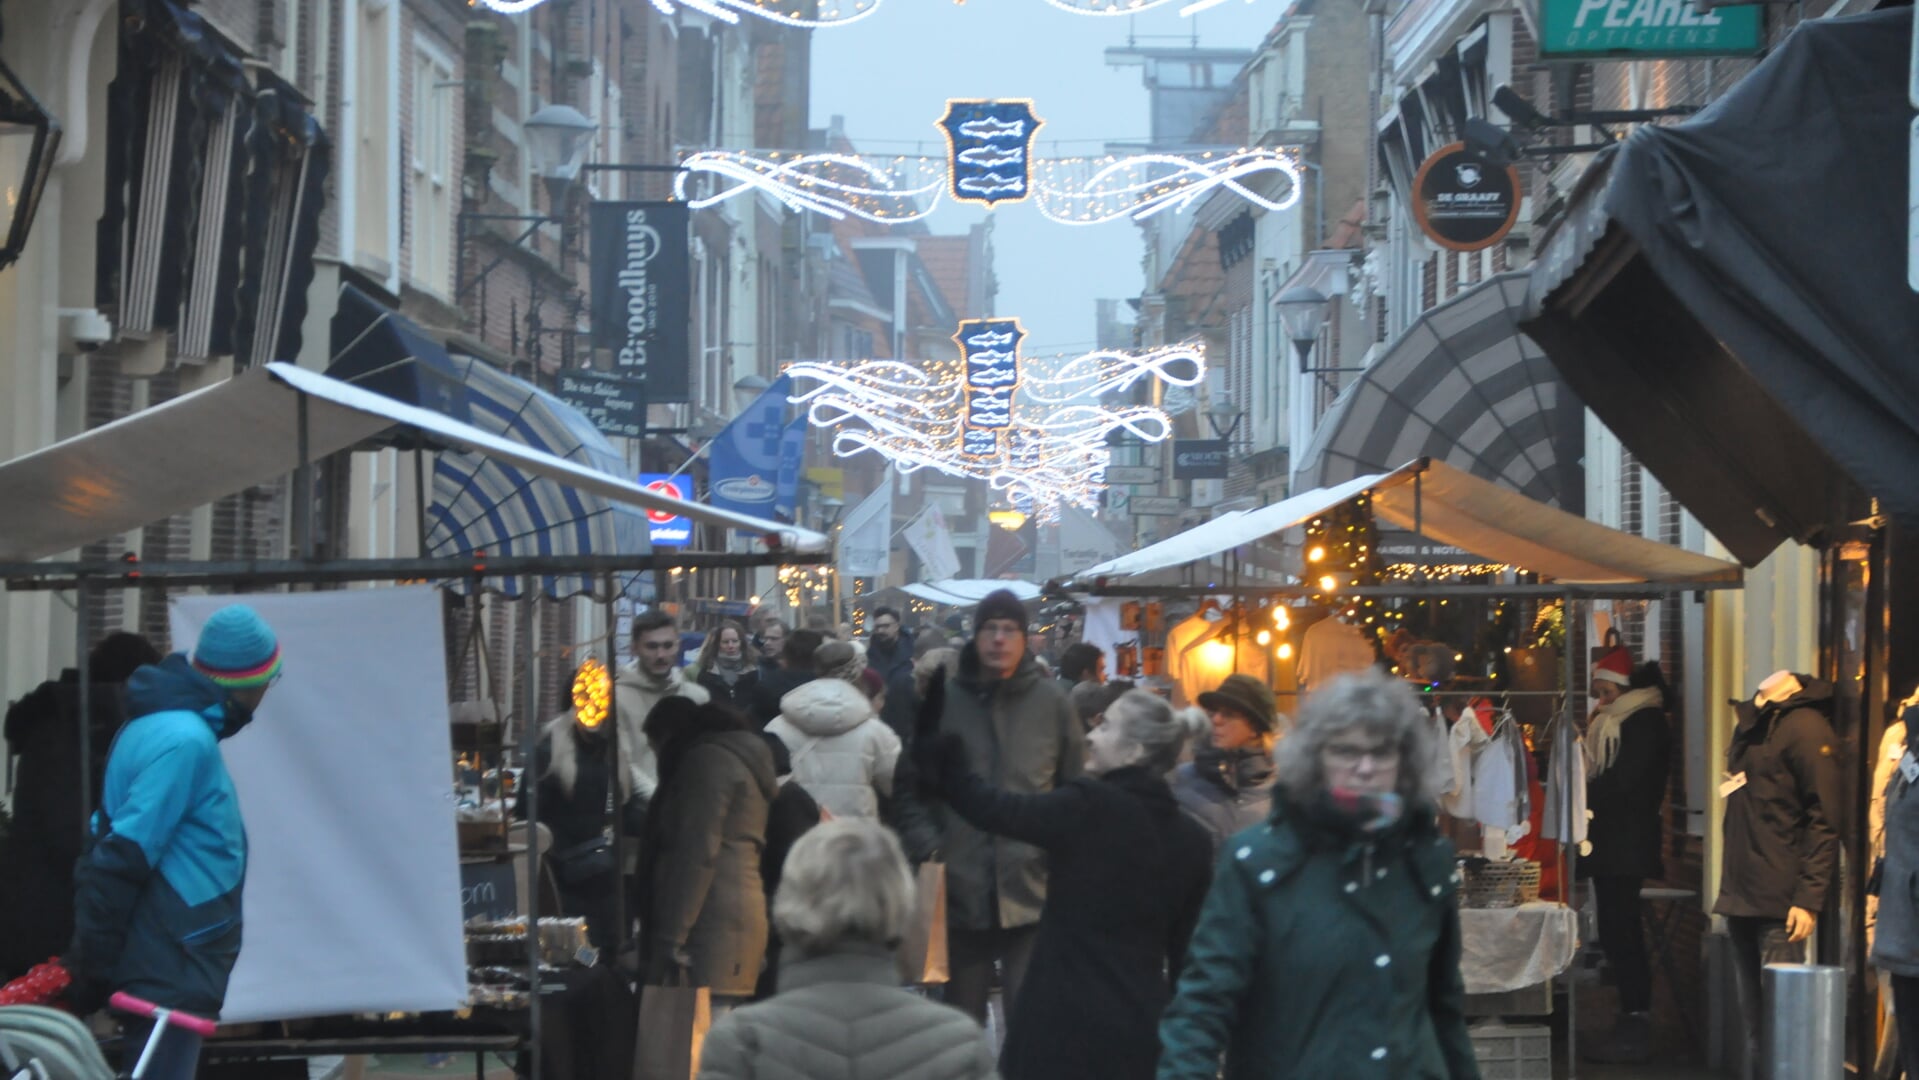 Er valt genoeg te beleven in de binnenstad van Enkhuizen tijdens de Winterfair op 9 december.